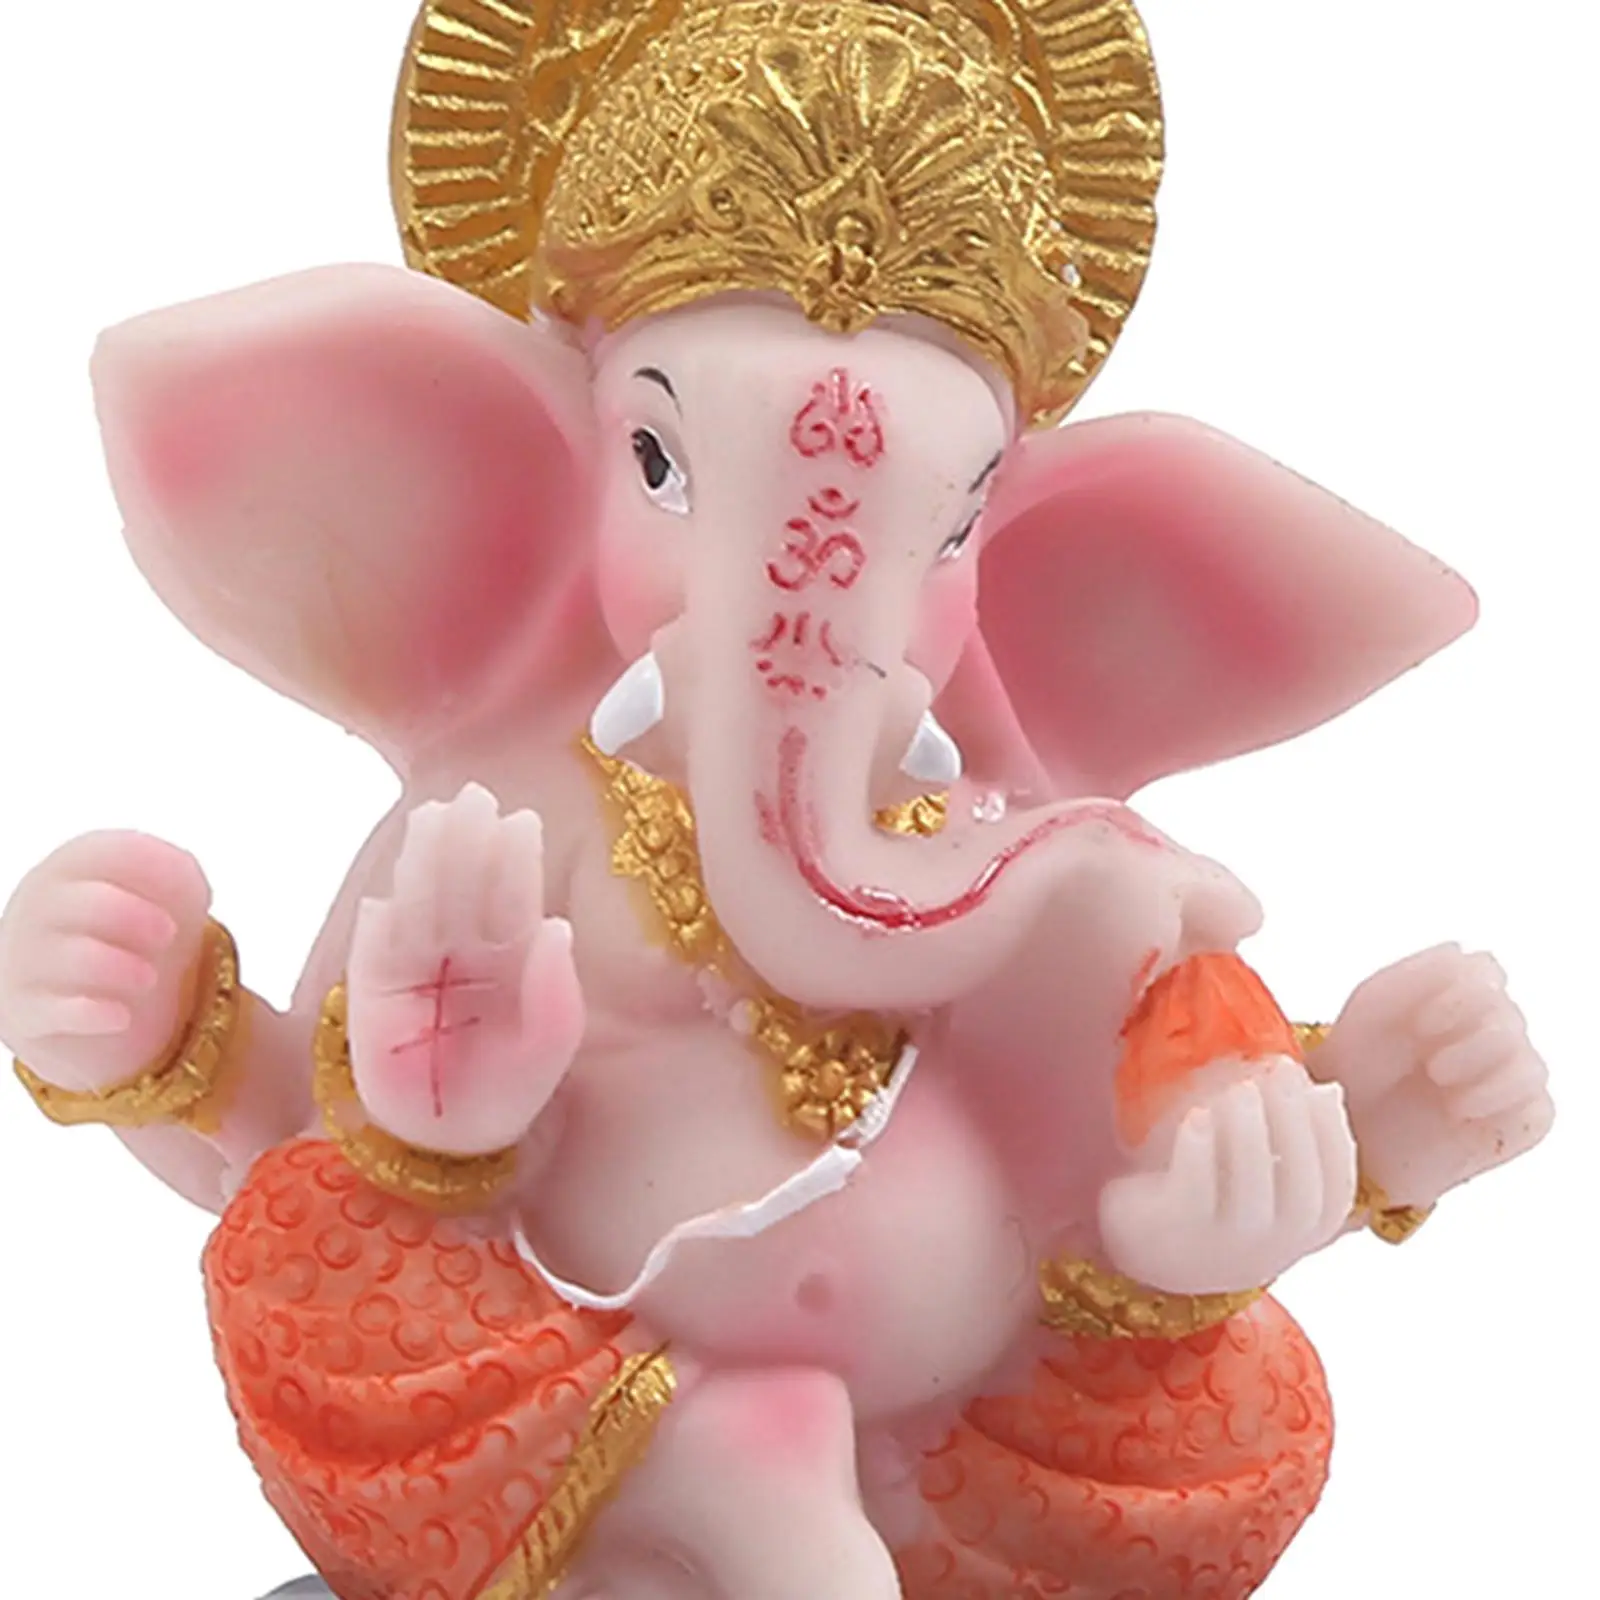 Hindu Elephant God Statue Ganesha Statue Religious Figurine Crafts Religious